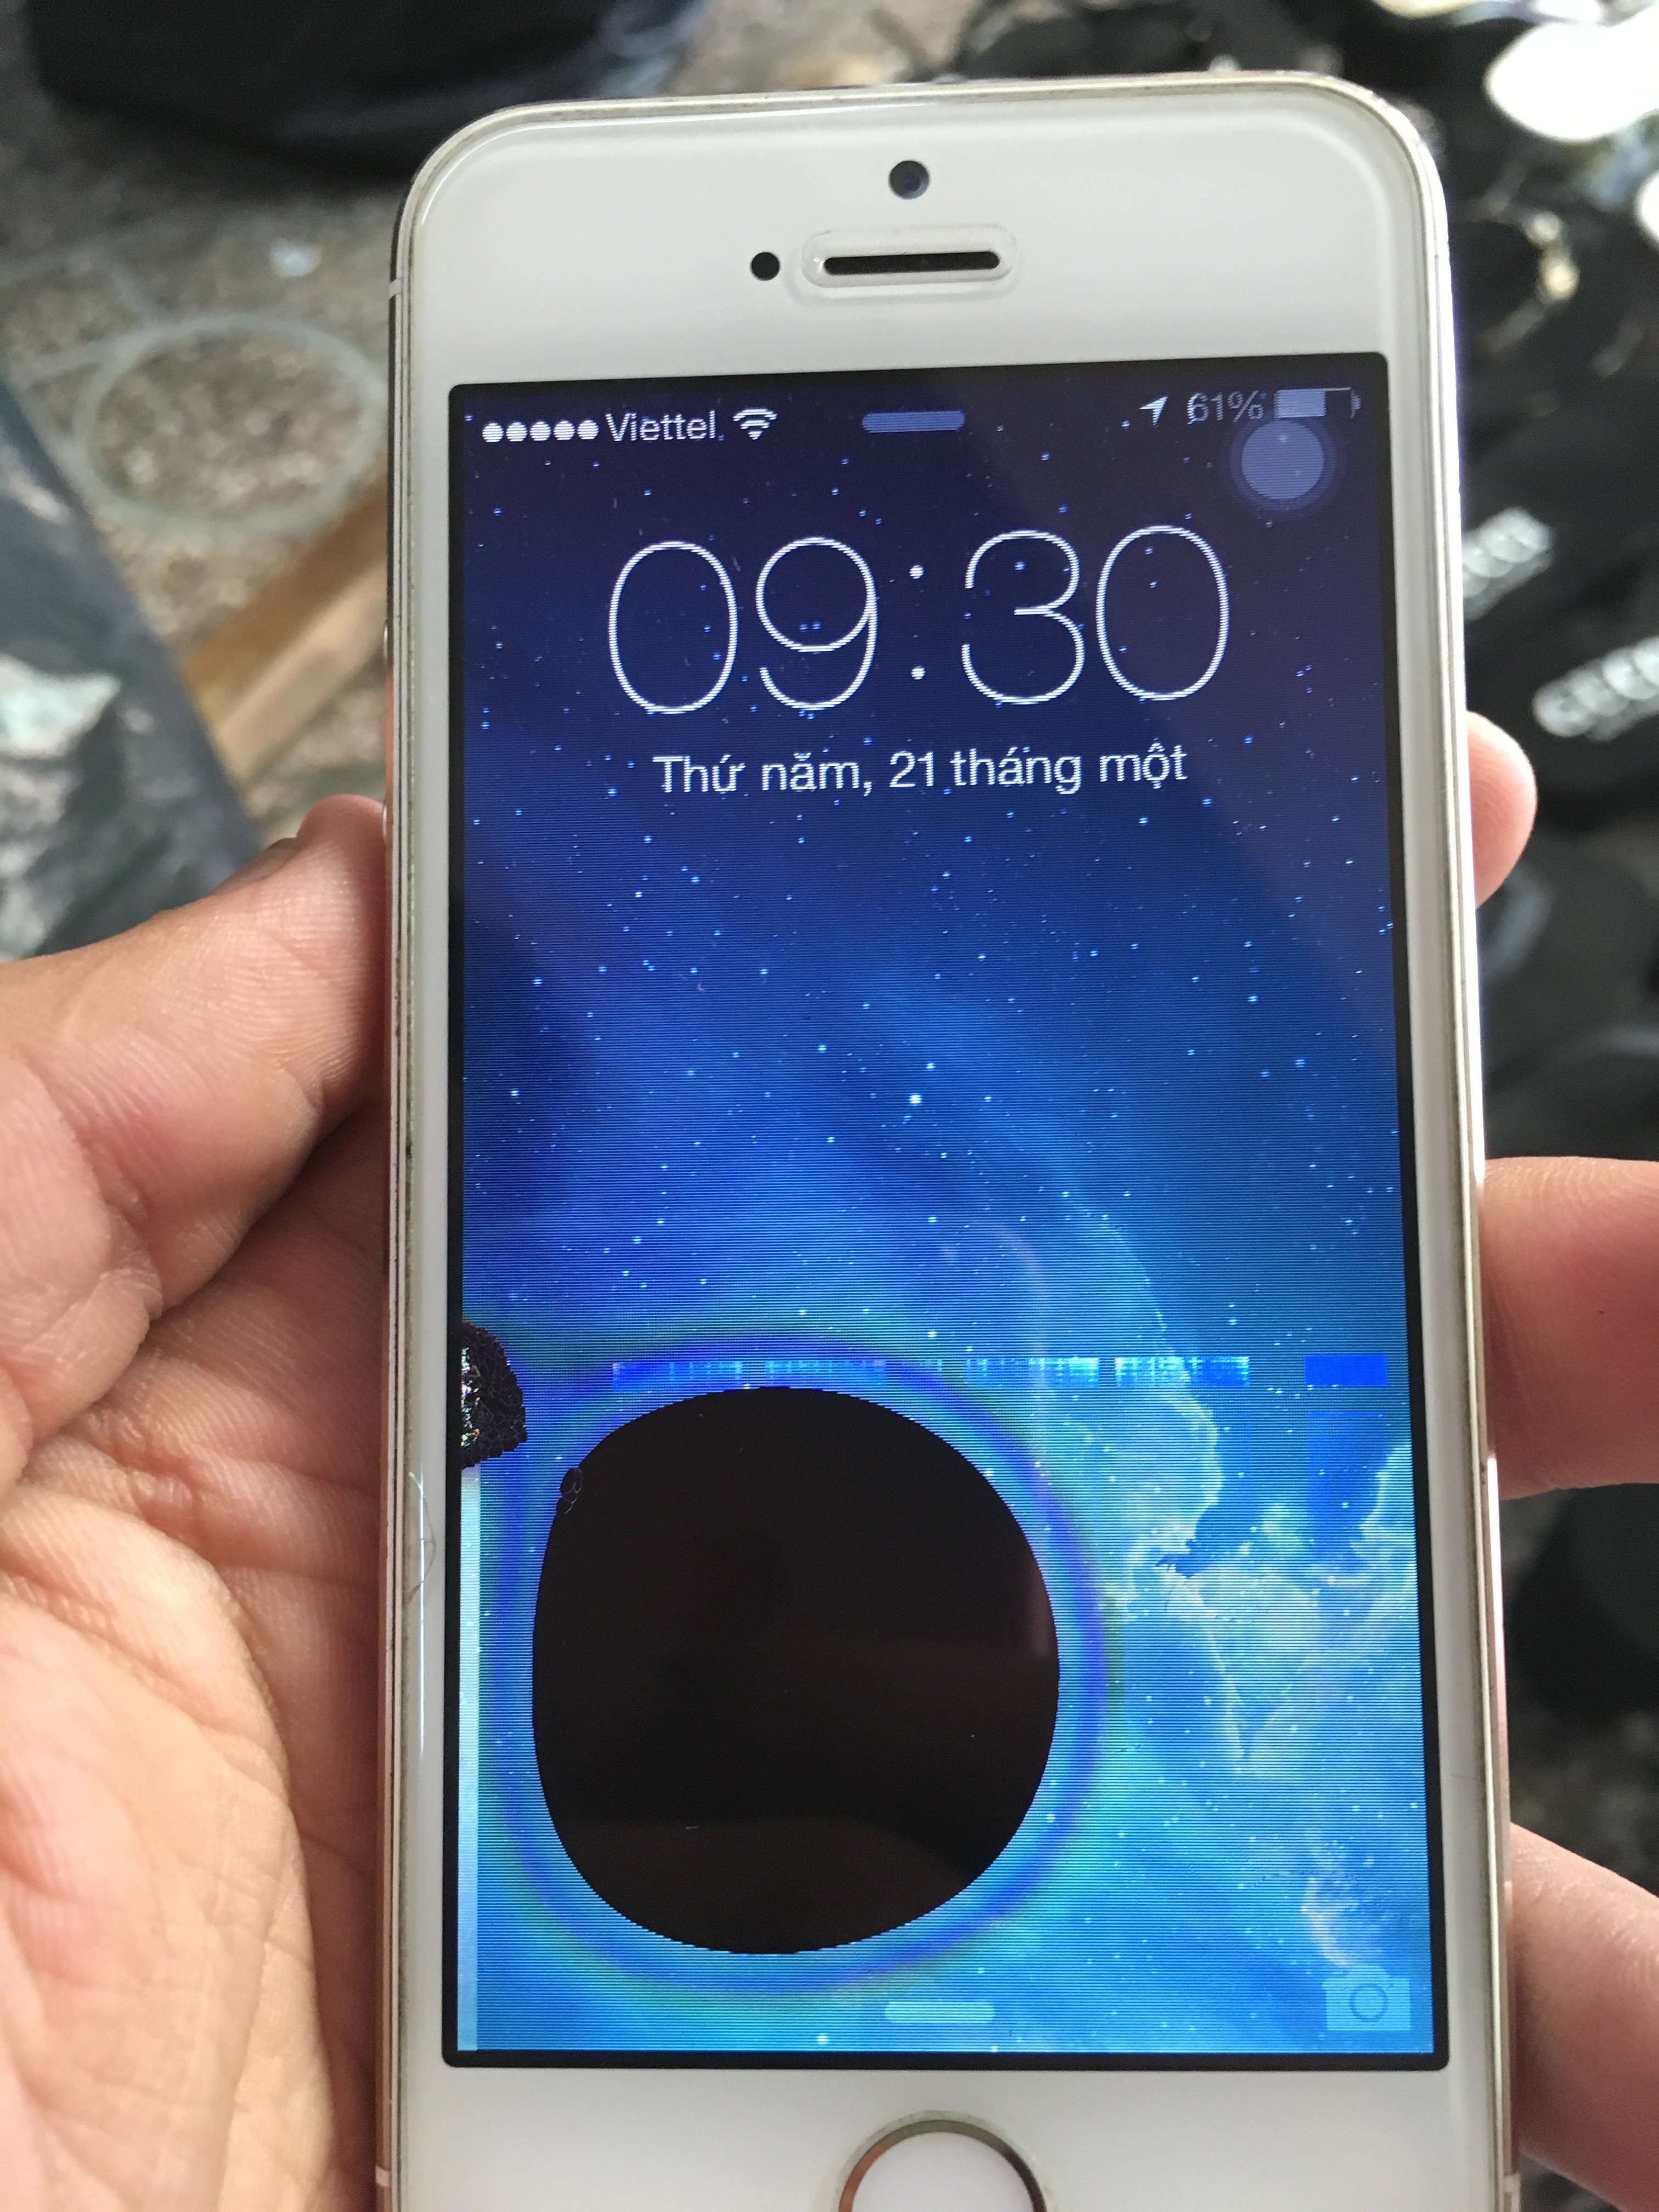 Sửa màn hình Iphone bị lem mực bao nhiêu tiền